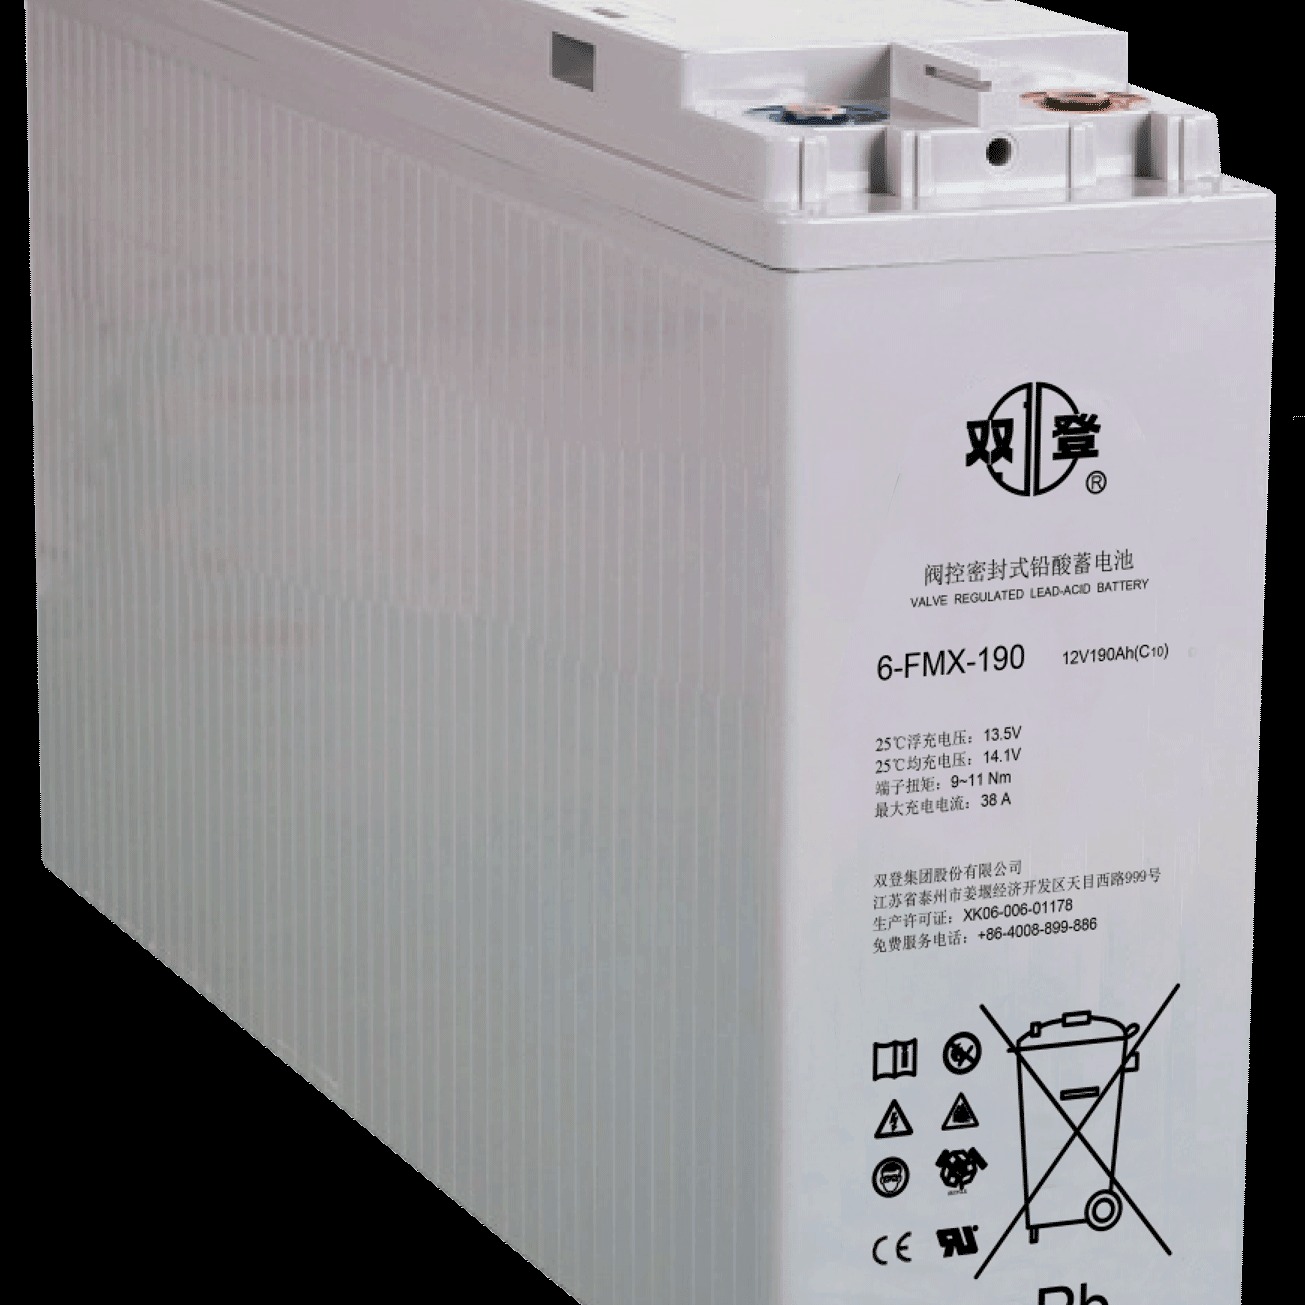 双登蓄电池6-FMX-190 12V190AH狭长型前置端子蓄电池 发电厂 铁路 UPS直流屏系统专用图片